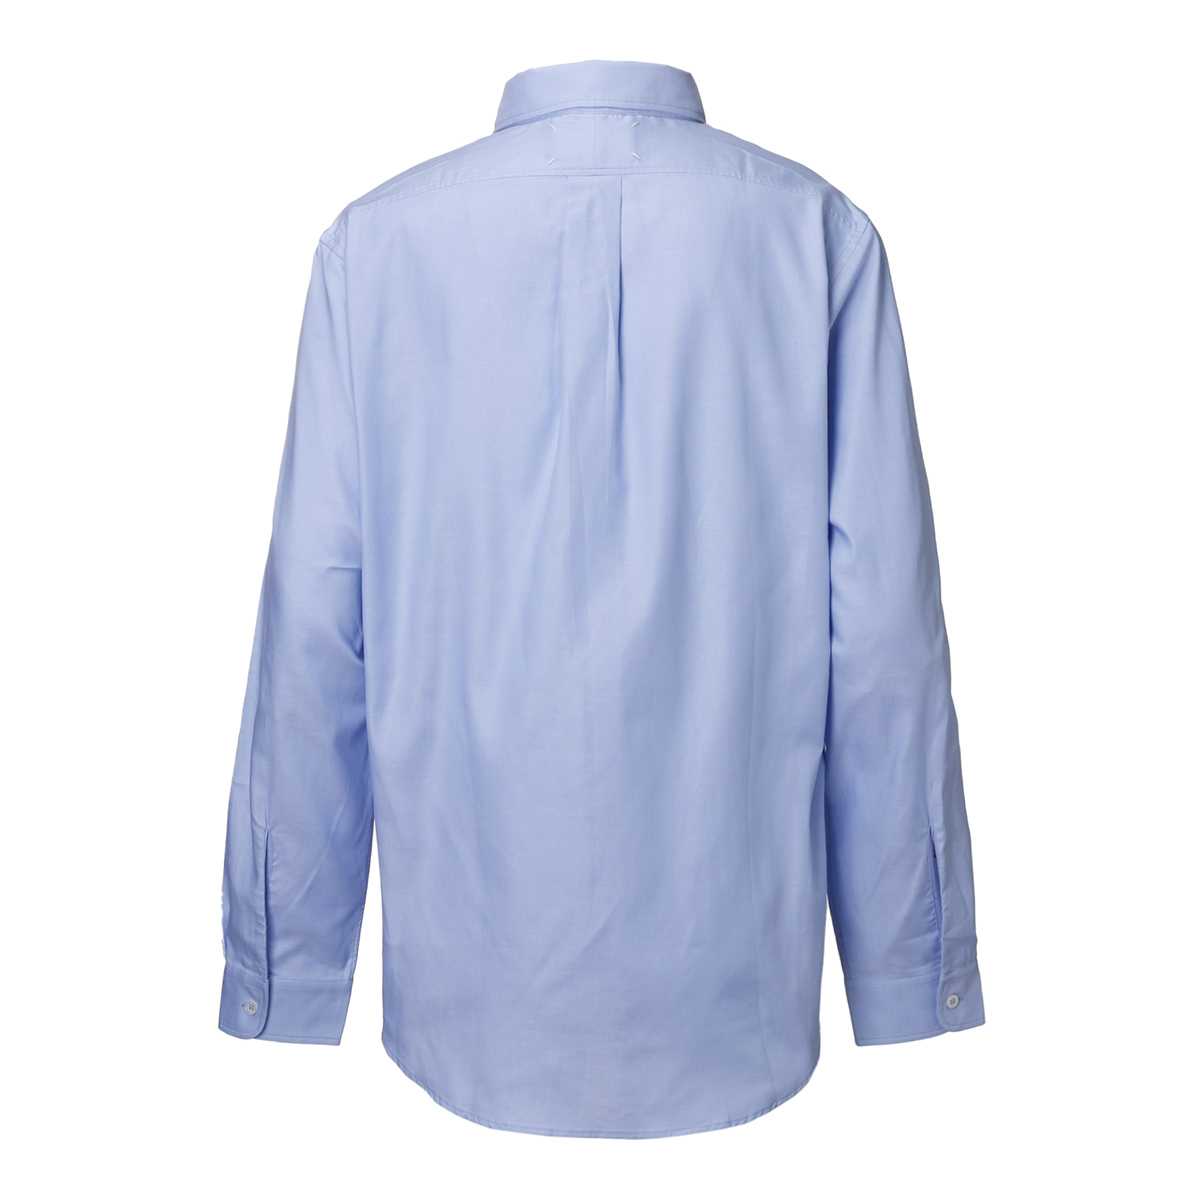  mezzo n Margiela Maison Margiela button down shirt men's s50dl0524-s52925-471